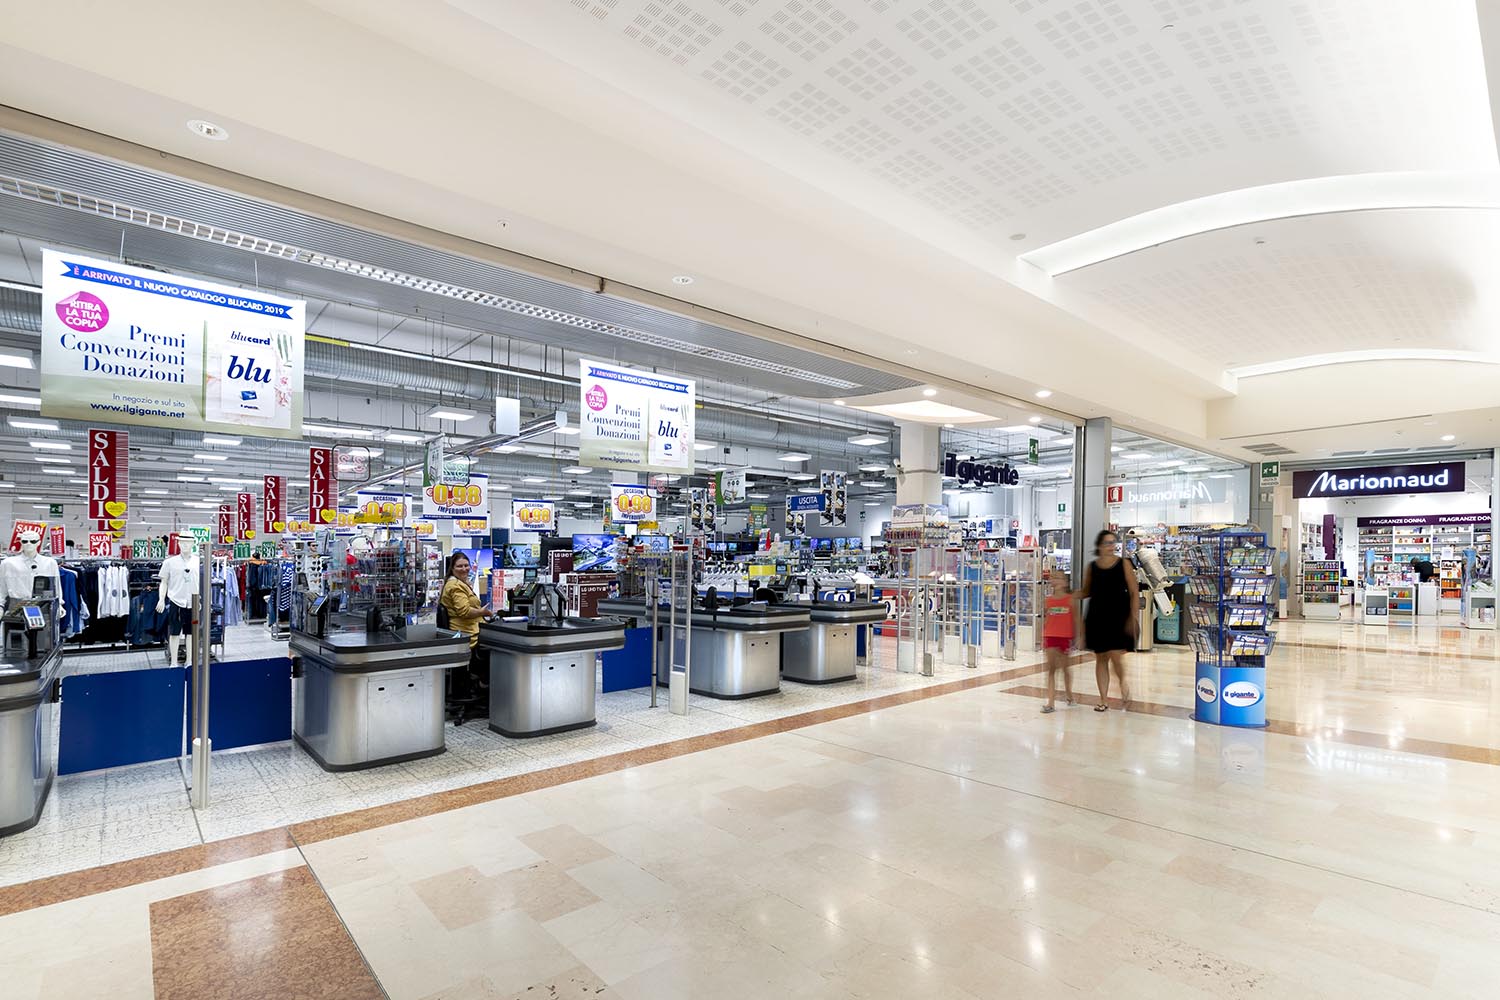 il gigante centri commerciali somma casse supermercato